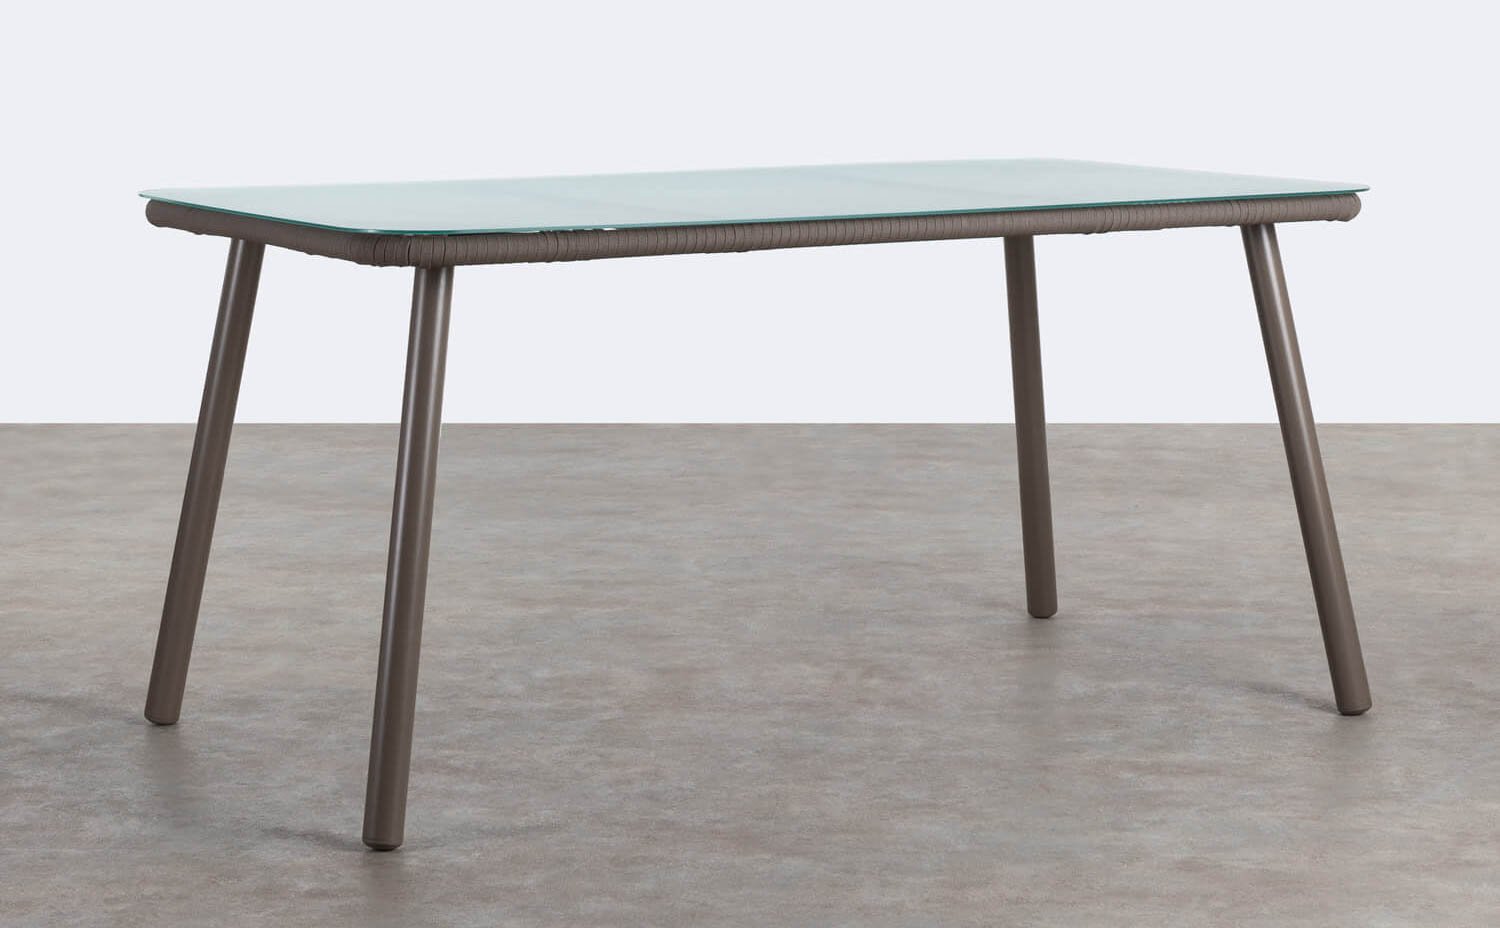 Table de Salle à Manger Rectangulaire en Aluminium et Verre (160x90 cm) Drian, image de la gelerie 1